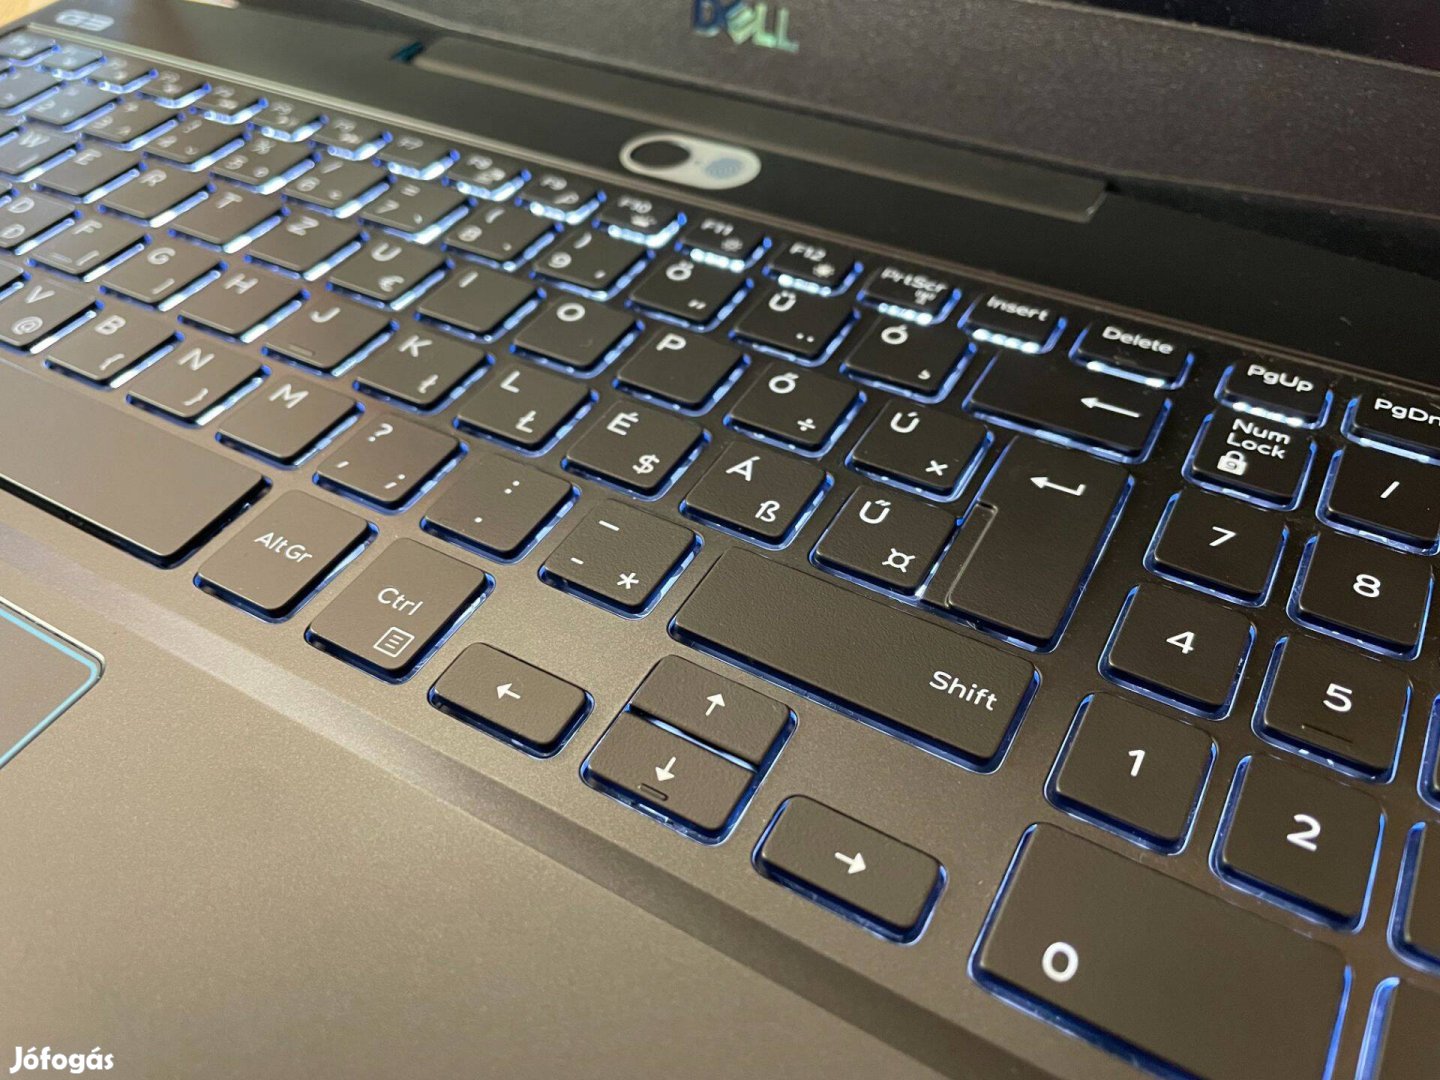 Dell G3 3500 gamer laptop, még garanciális, karcmentes, új állapotú,